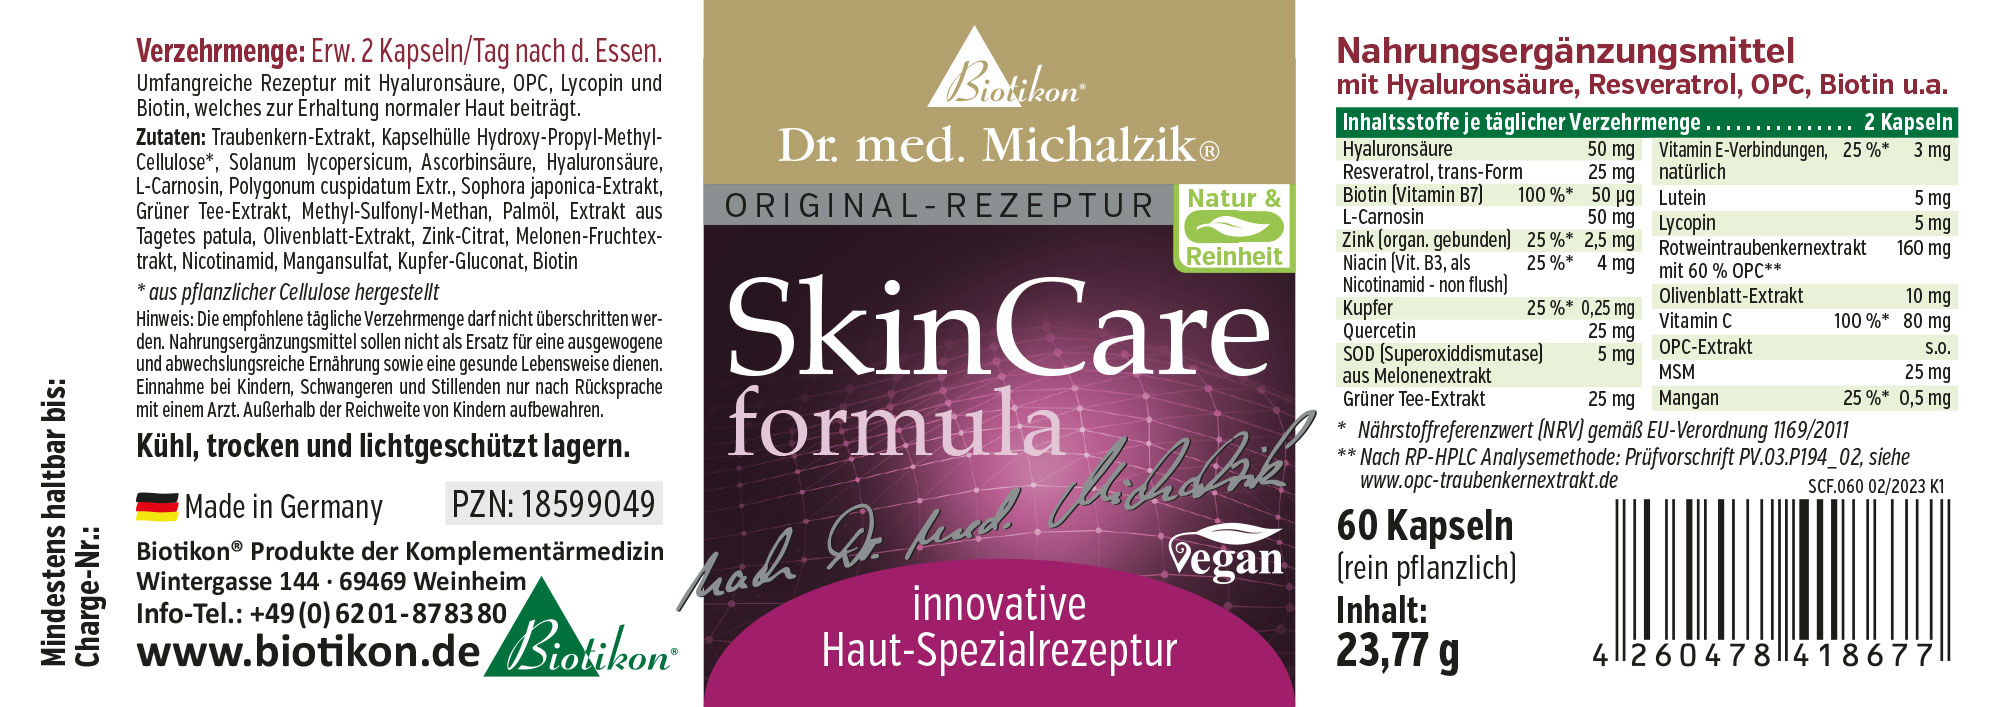 SkinCare formula nach Dr. med. Michalzik